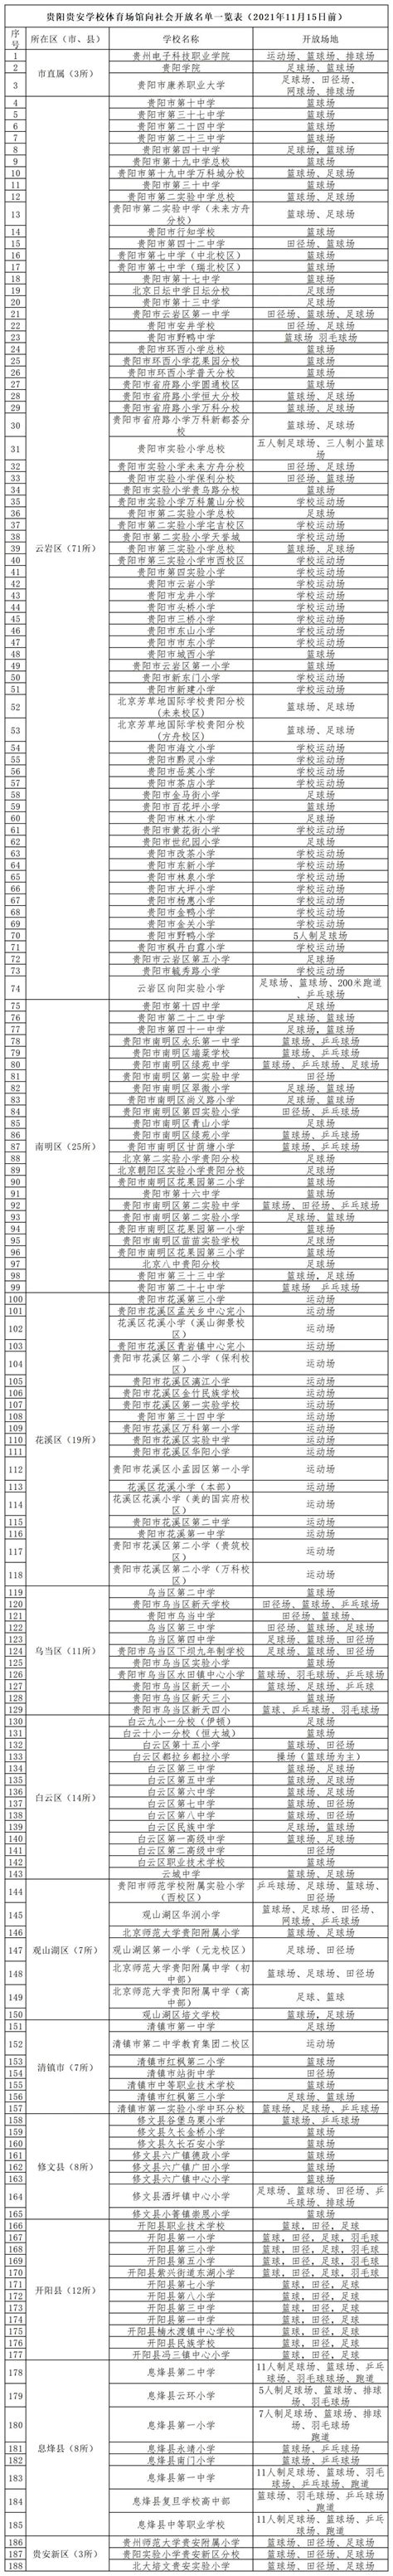 贵阳市教育局公布首批188所开放体育场馆学校名单 - 当代先锋网 - 要闻